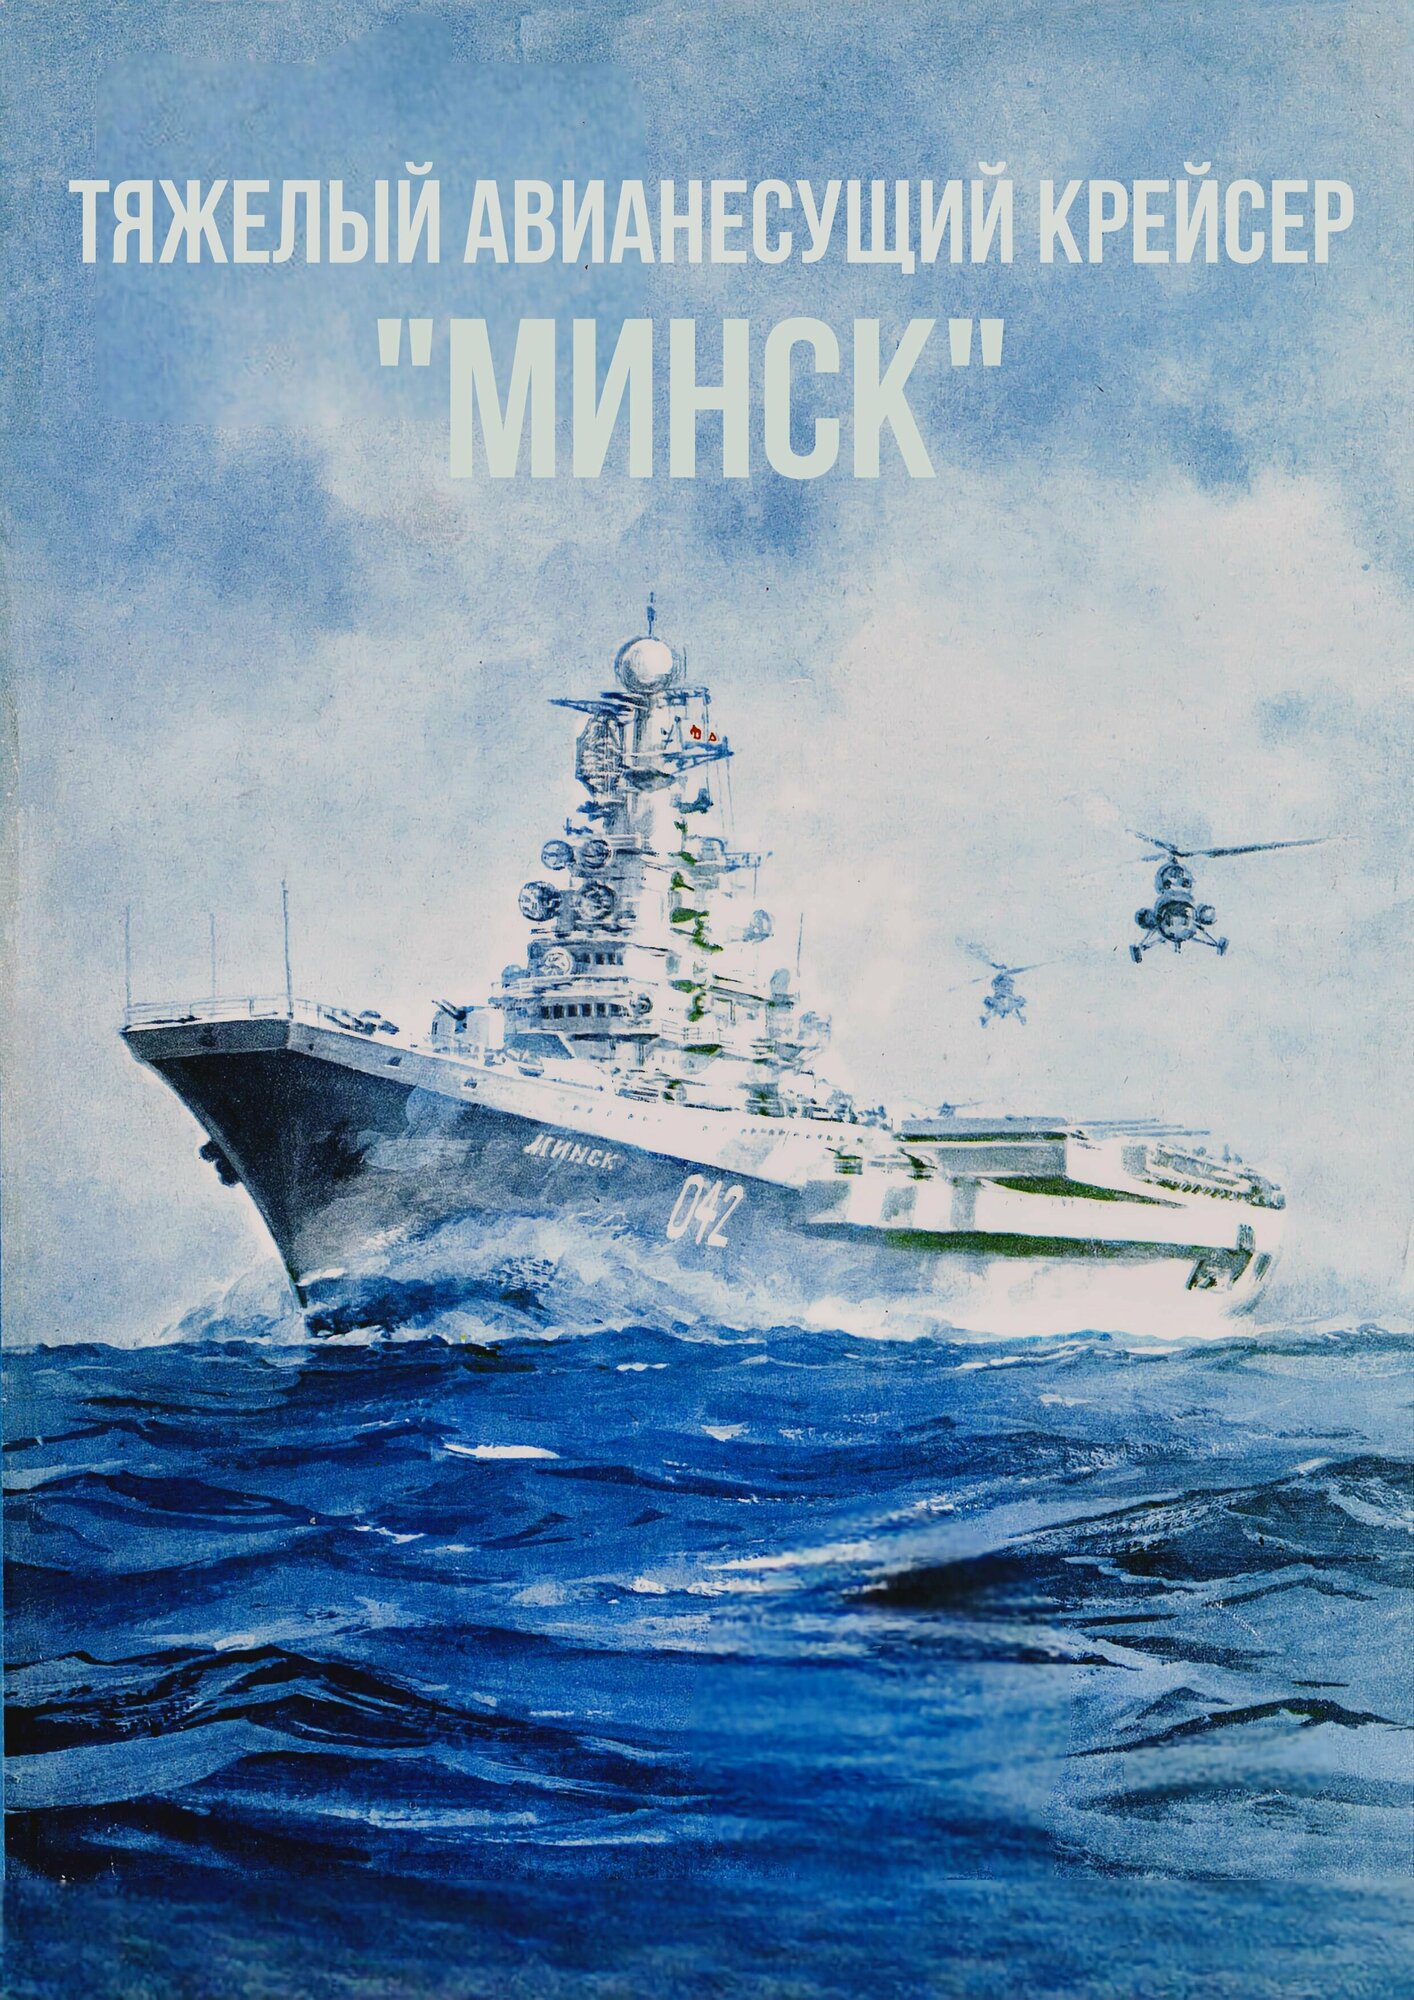 Сборная модель авианесущего крейсера "Минск"